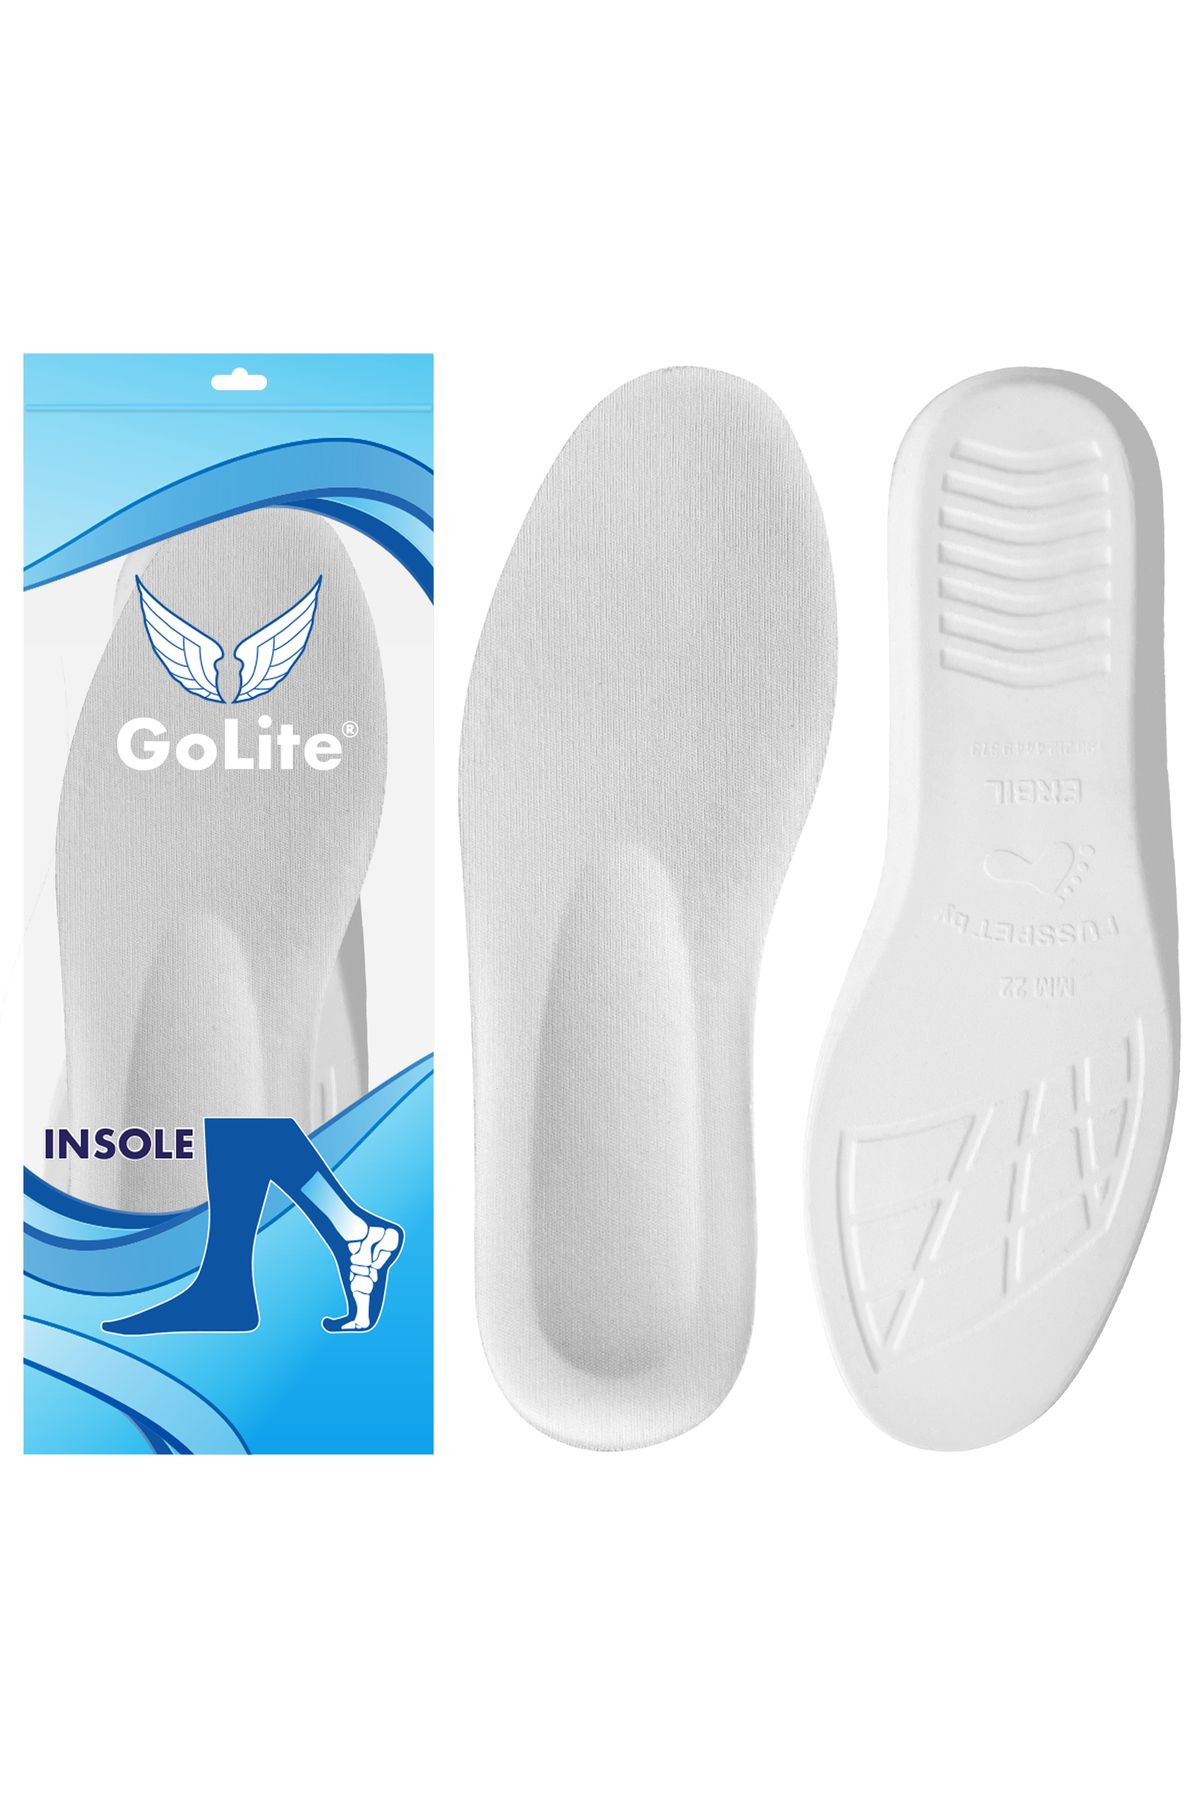 GoLite Beyaz Ayakkabı Tabanlığı, Memory Foam Hafızalı Ayakkabı Iç Tabanlığı, Rahat Tabanlık - M22b Insole